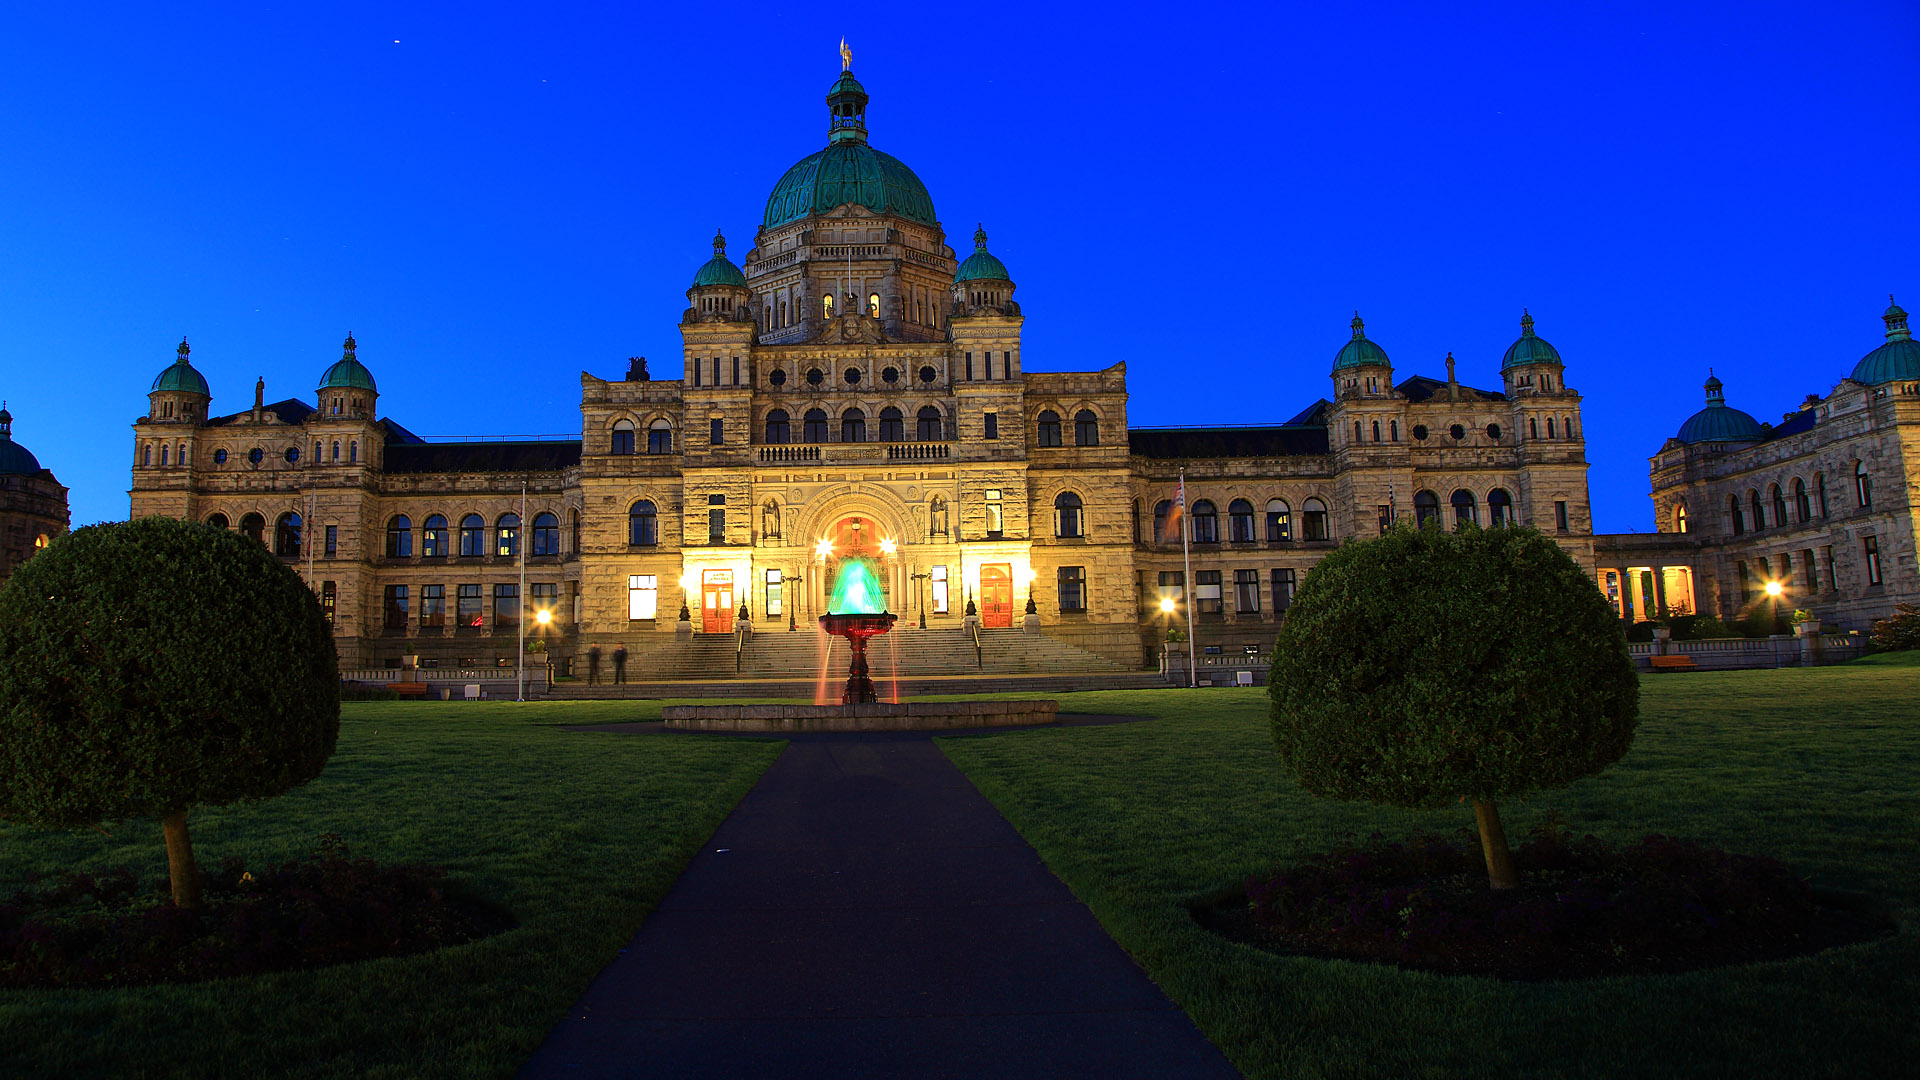 维多利亚省议会大厦面对着港口，是一座维多利亚式的建筑，由英国的法兰西斯·拿顿贝利设计。园内耸立着维多利亚女王的铜像，中央圆顶部分是乔治·温哥华的铜像。喷泉是为了纪念B.C.省殖民100周年所建，西侧的联合广场记载了加拿大10省及2地方的图腾徽章。 夜晚的议会大厦则有另一种风情，超过3千个灯泡装饰着大厦的周围，是维多利亚港湾区著名的夜景。